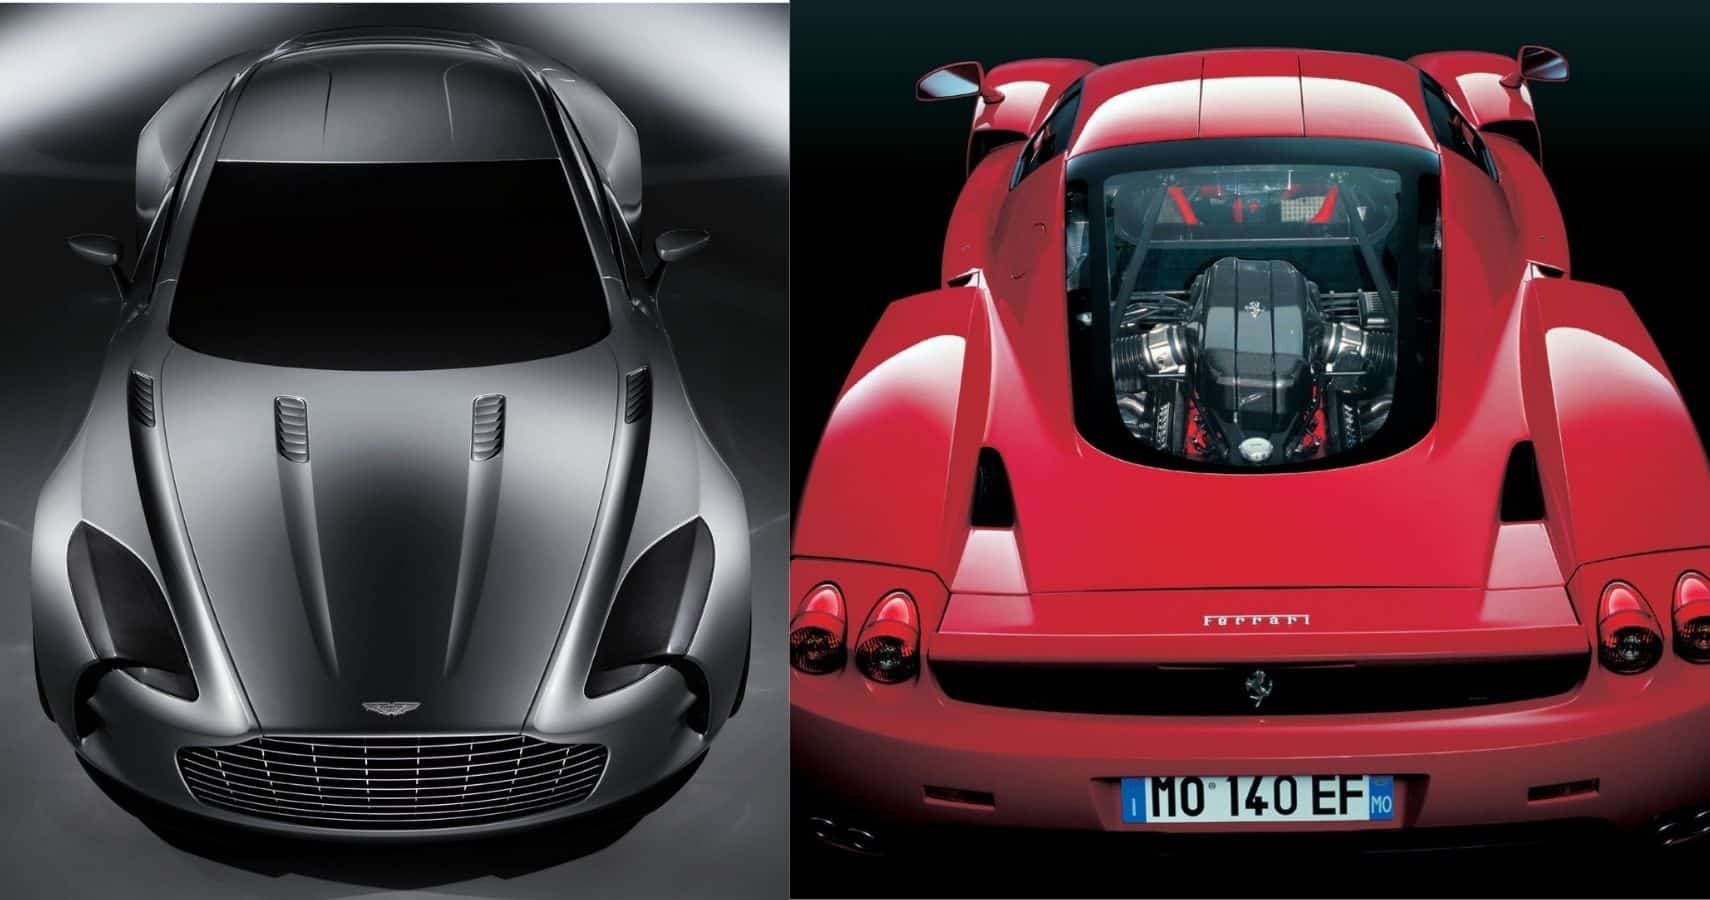 Comparación entre el Aston Martin One-77 y el Ferrari Enzo ariel